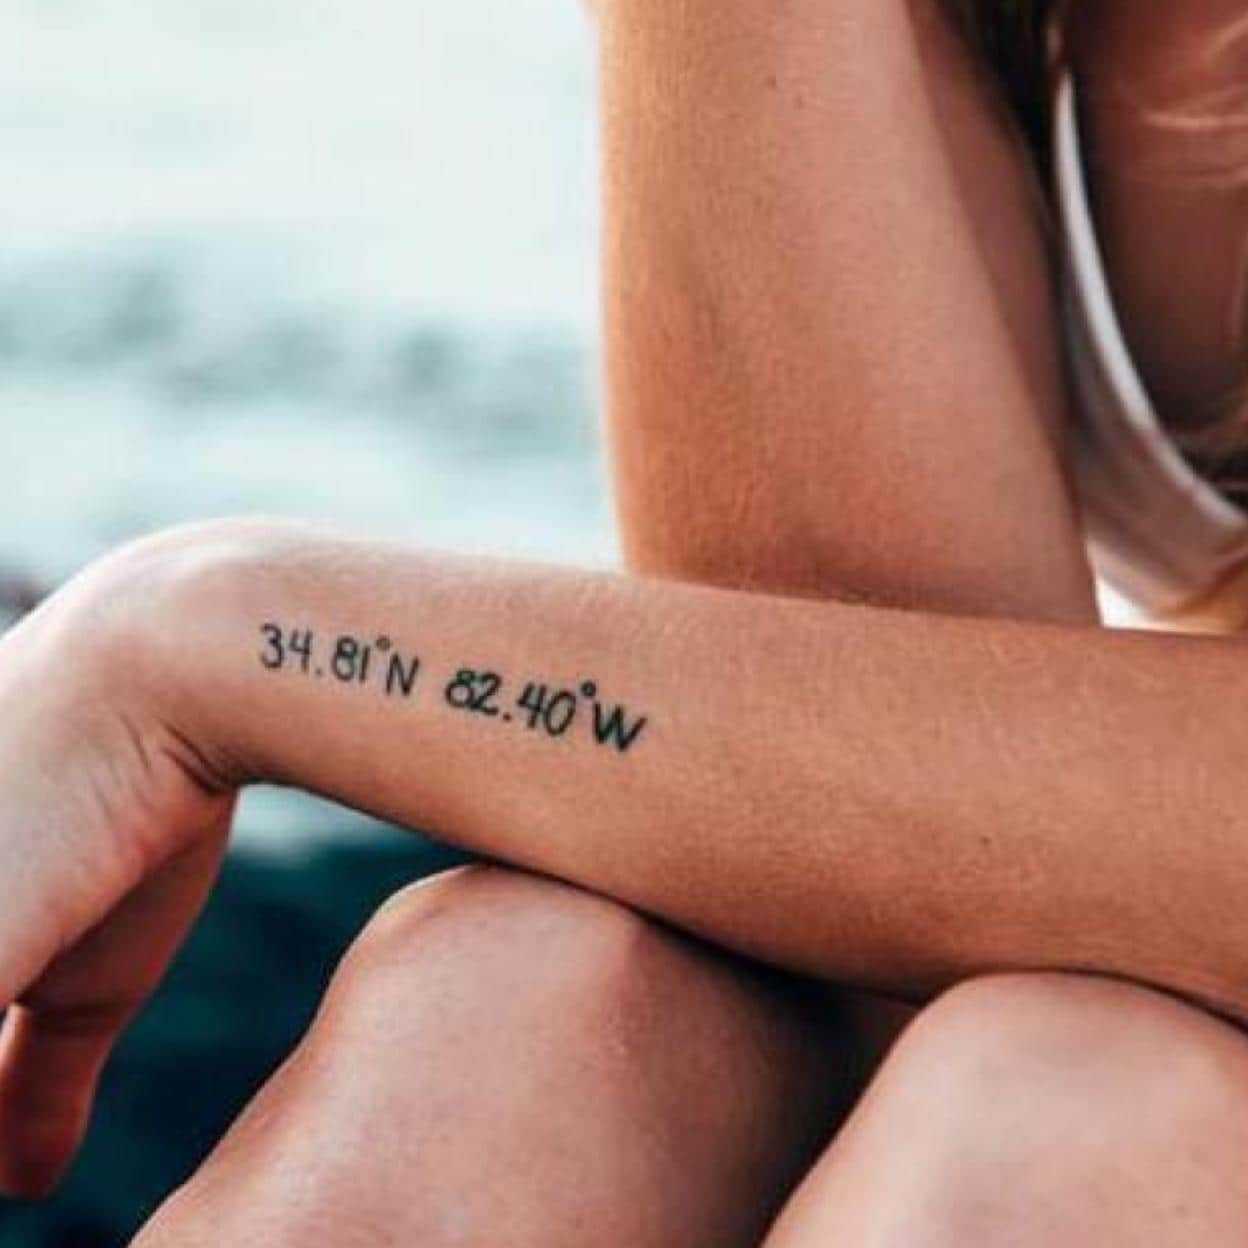 Tatuajes pequeños: 10 ideas con gran significado